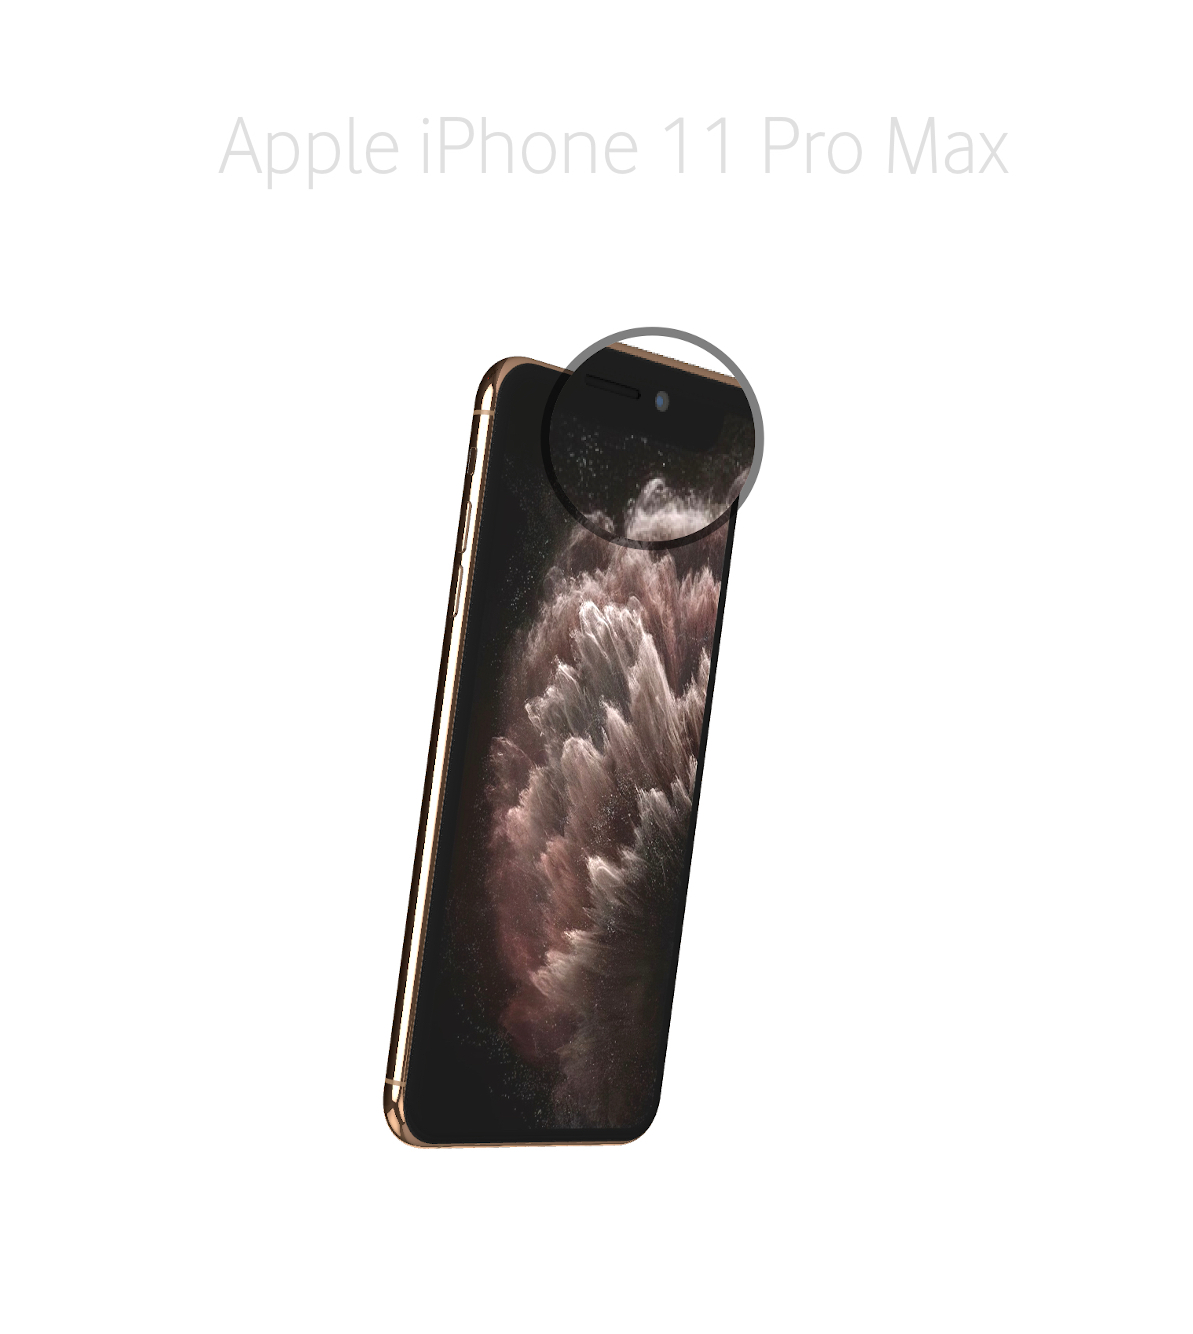 Laga kamera (selfie) iPhone 11 Pro Max